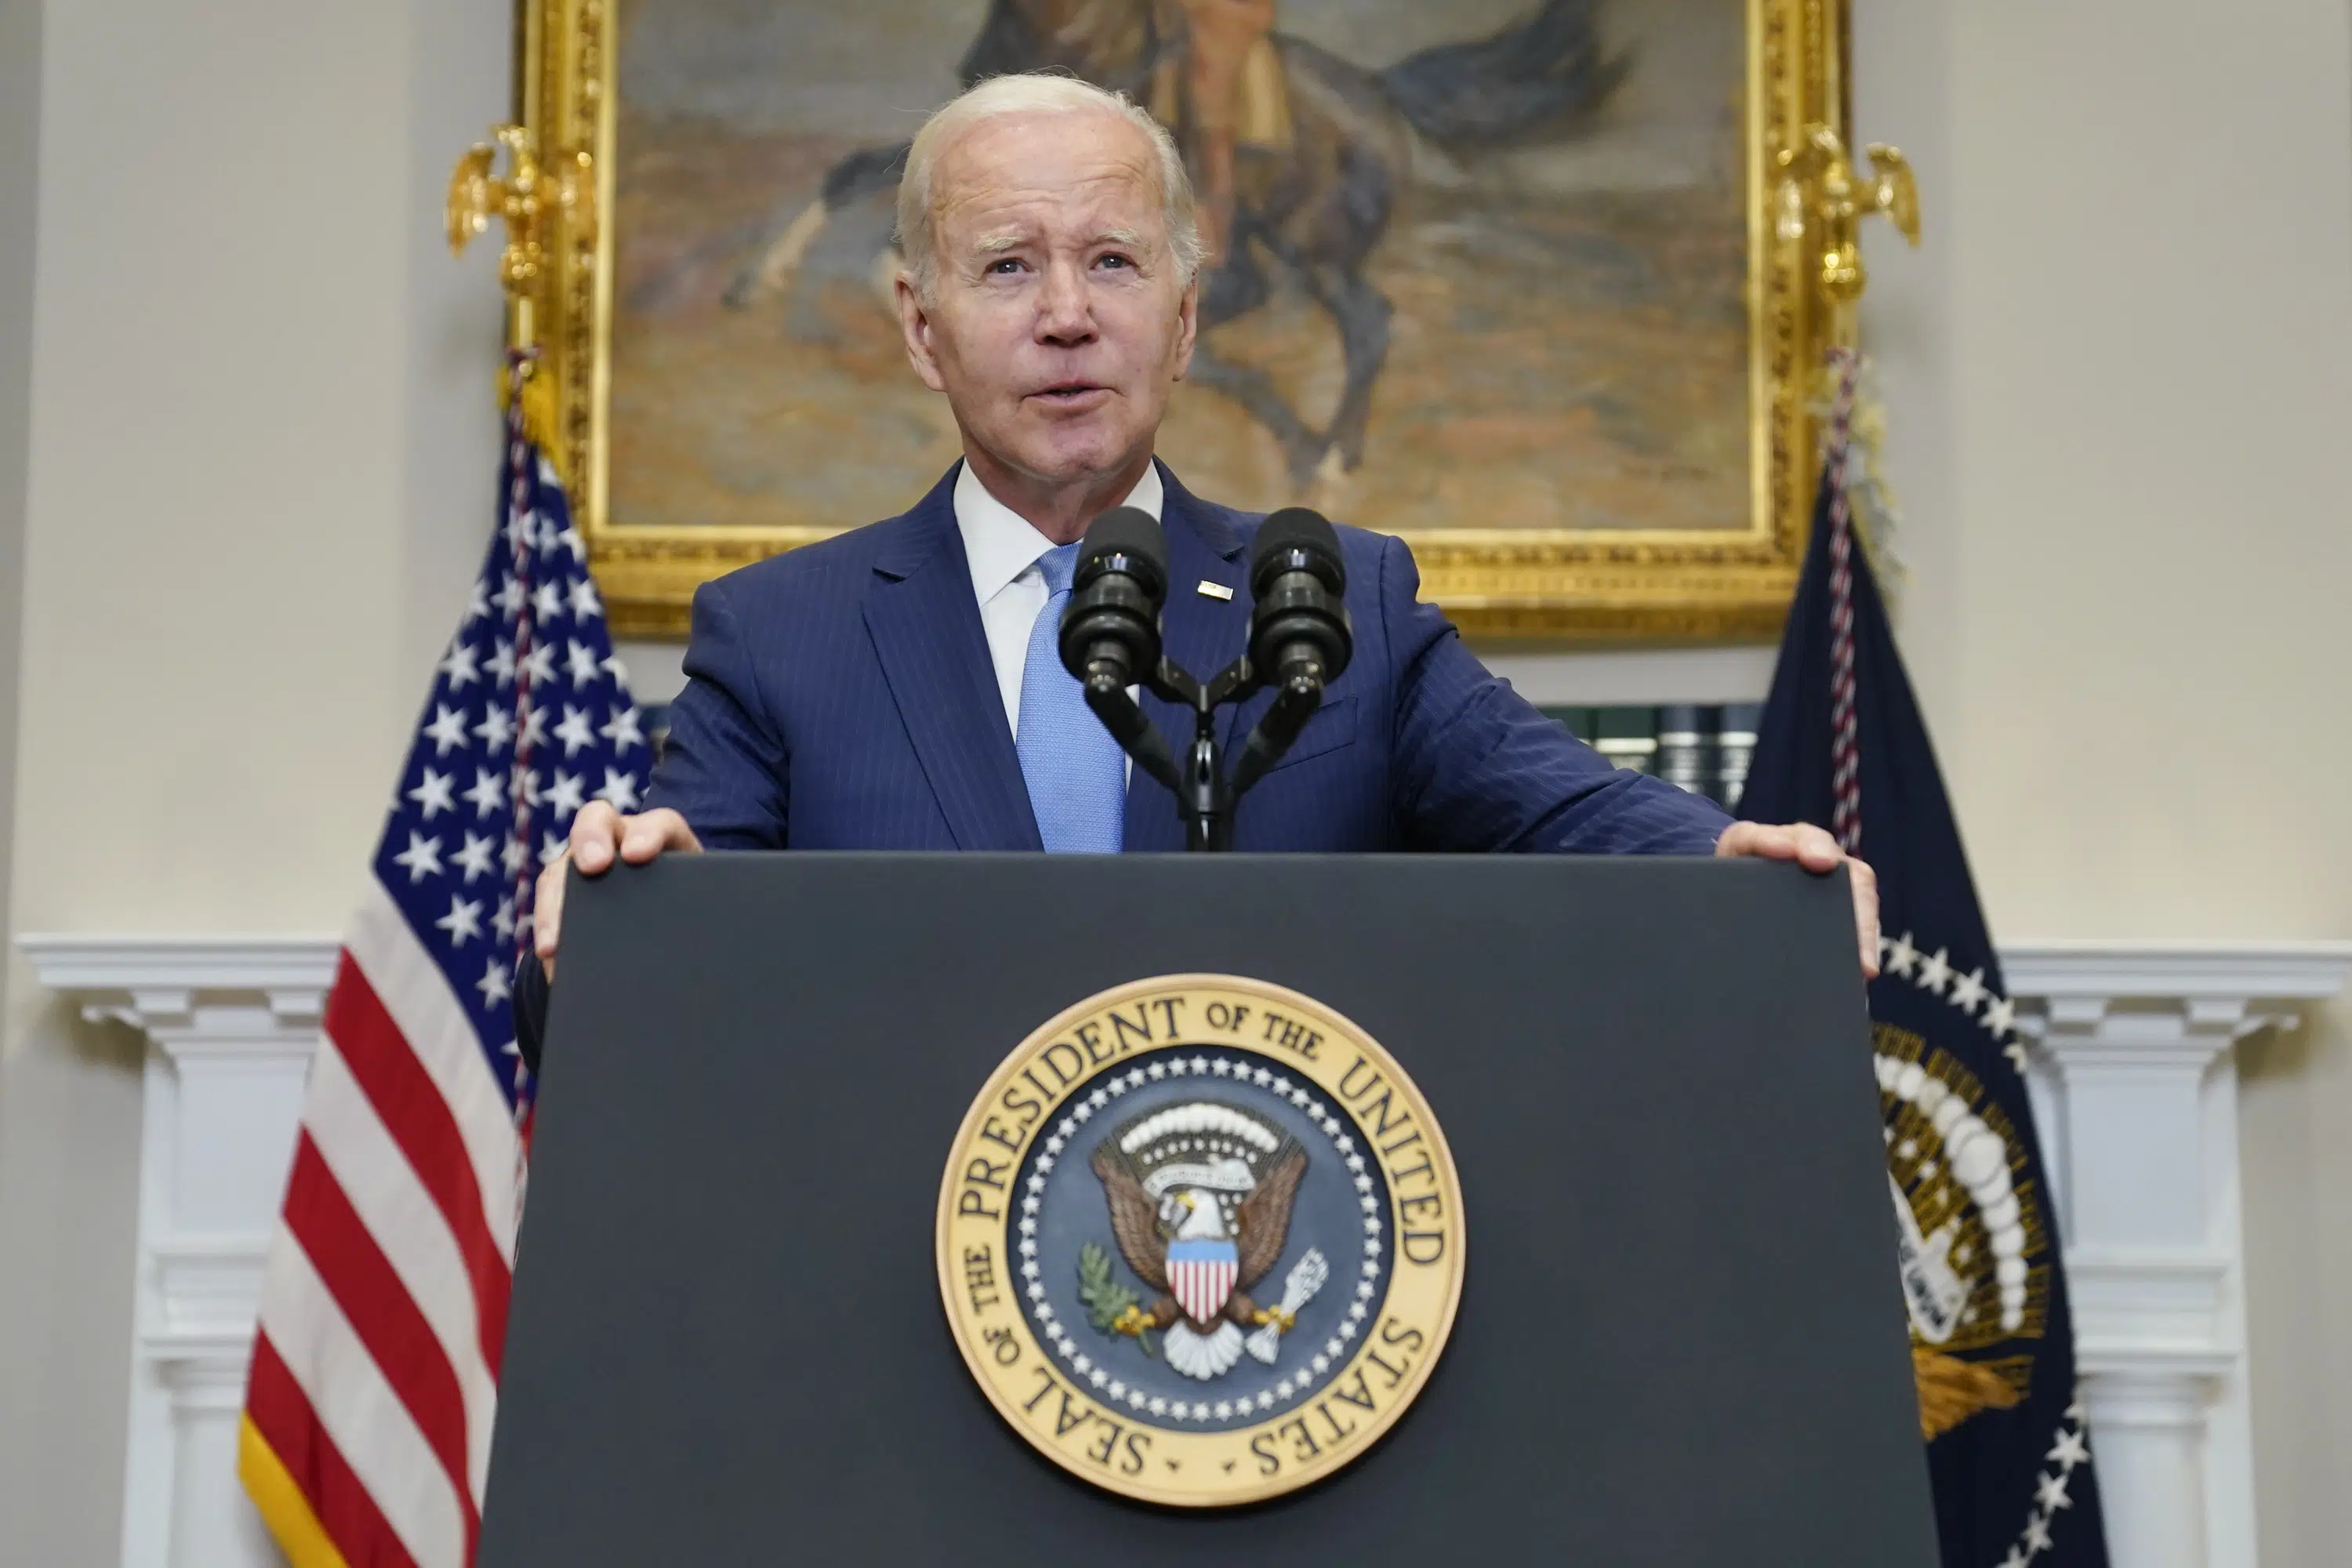 Biden deklaruje, że „Ameryka nie zbankrutuje”, mówi, że jest przekonany o umowie budżetowej z ustawodawcami GOP